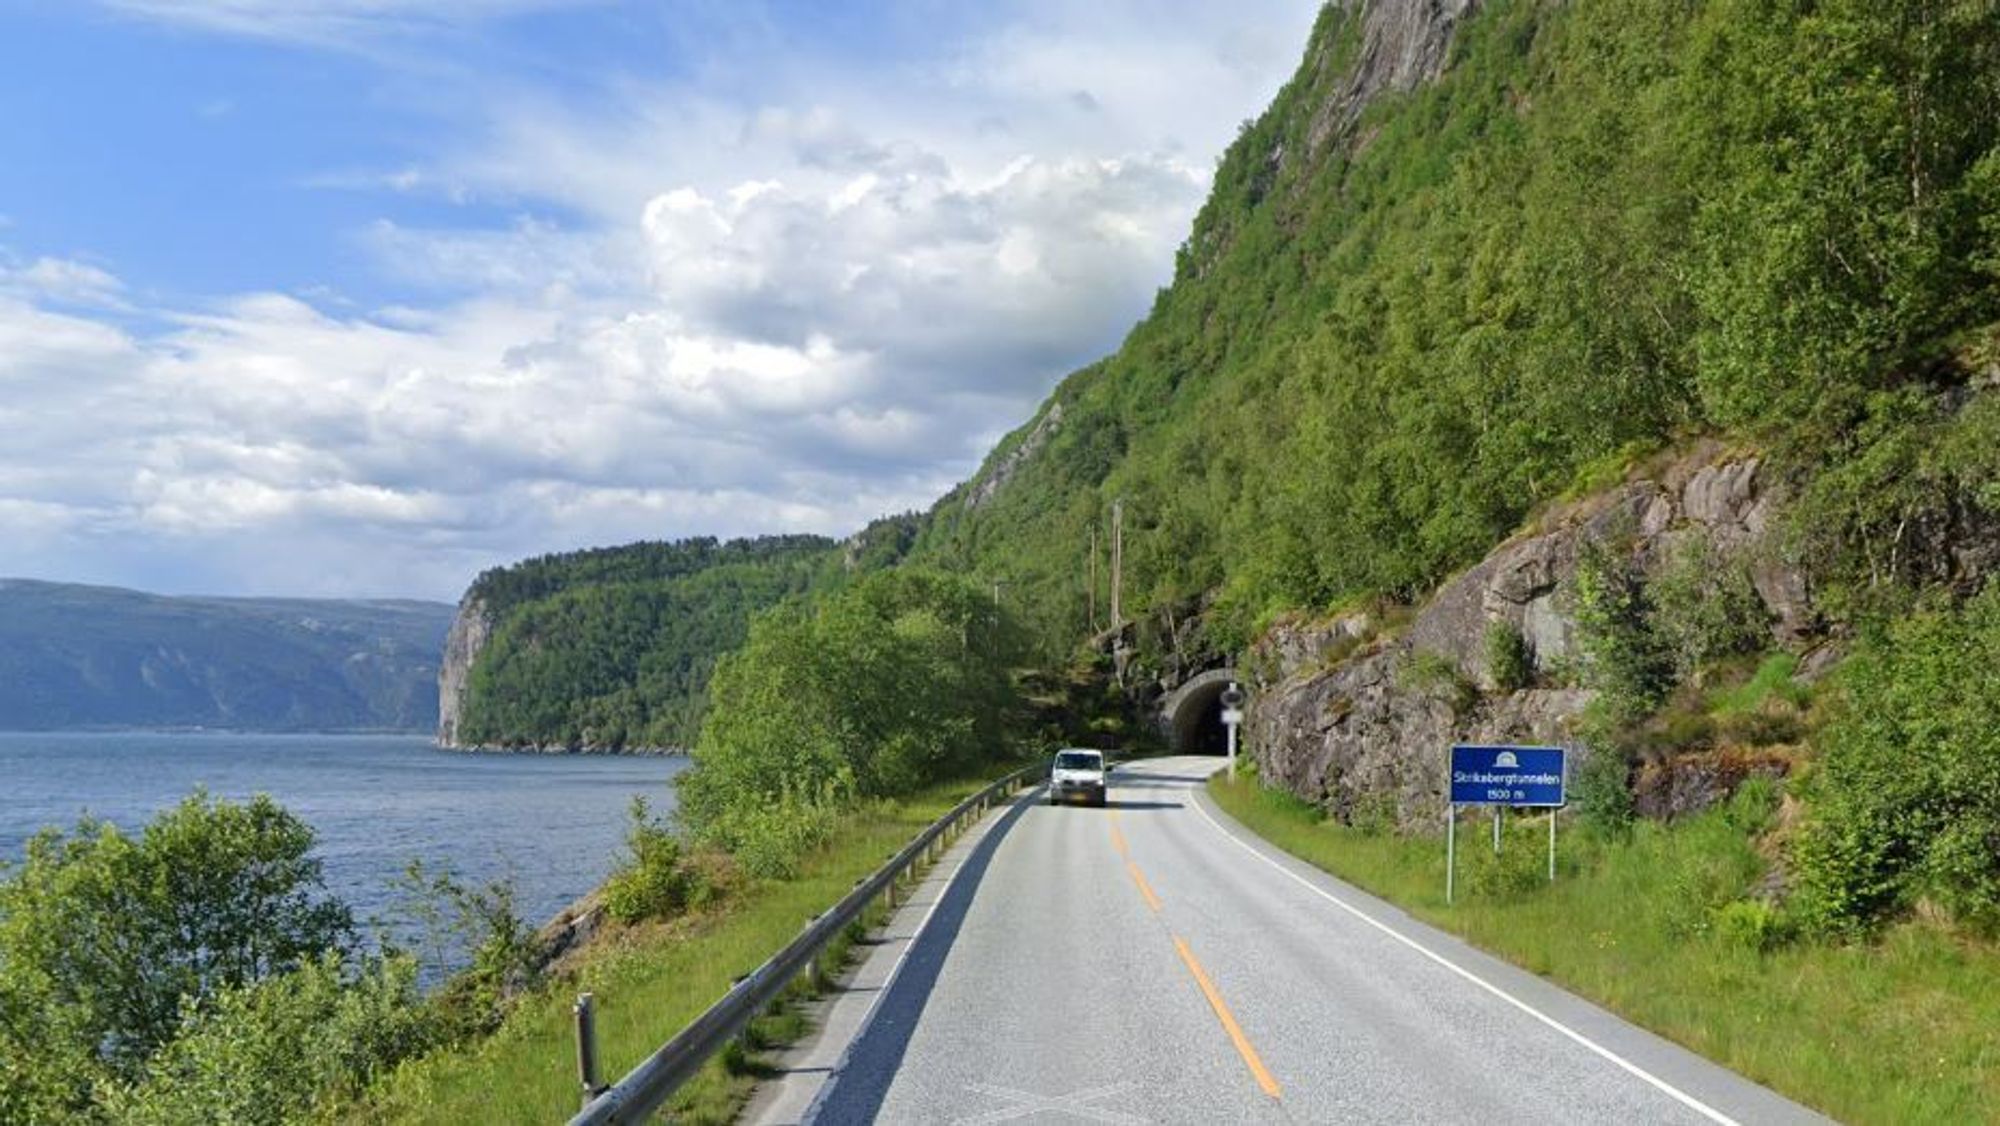 Skrikebergtunnelen er på europavei 39 i Gulen kommune i Vestland. Tunnelen går gjennom Skrikeberget sørvest for Ytre Oppedal i Risnefjorden.